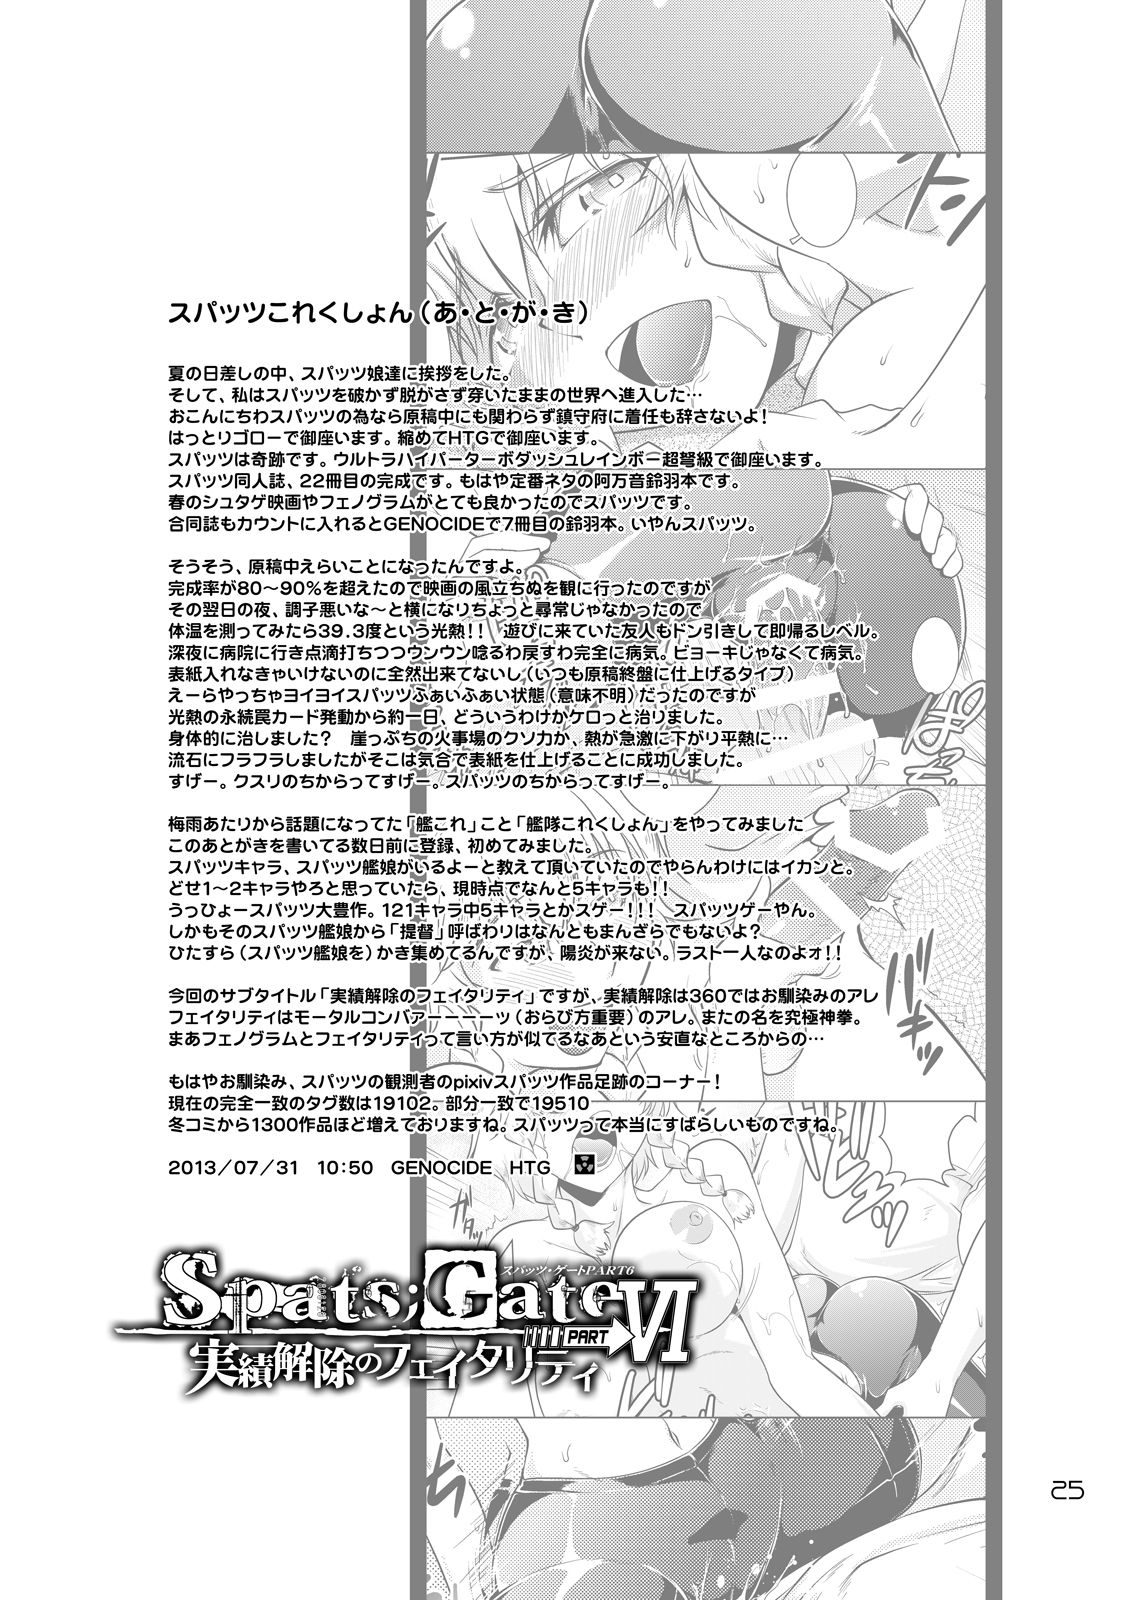 [GENOCIDE (Hattori Gorou)] Spats;Gate PART 6 Jisseki Kaijo no Fatality (Steins;Gate) [Digital] 23